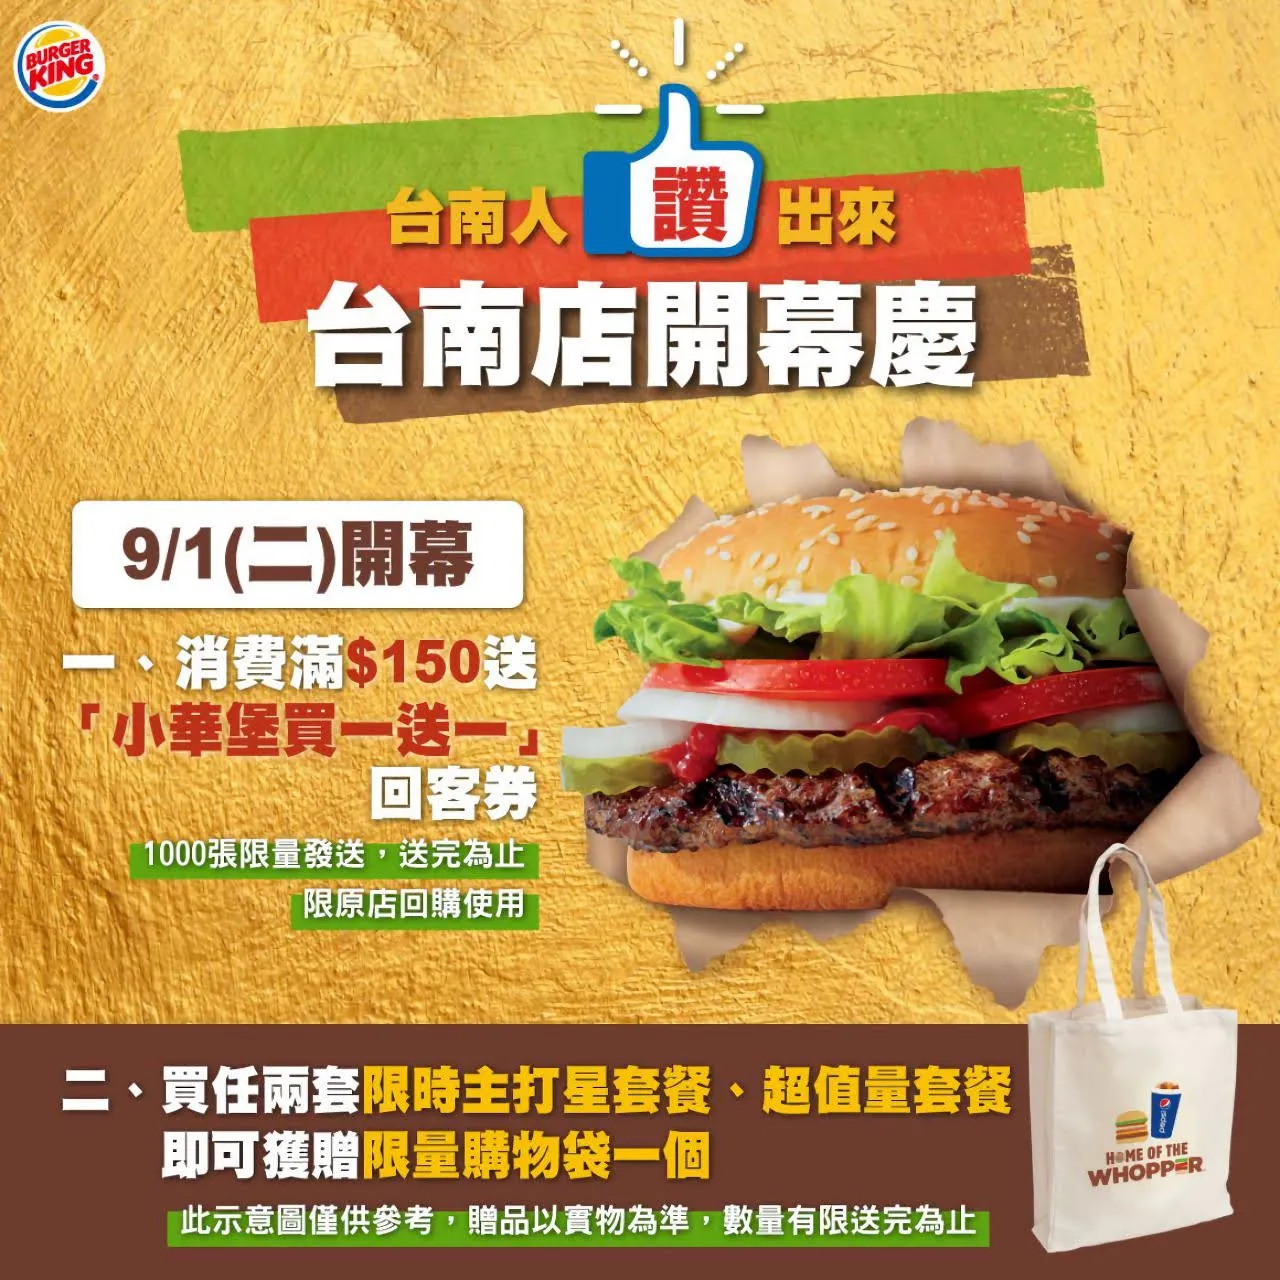 超狂！全球唯一專為台南人限量訂製巧克力漢堡｜漢堡王9/1回歸台南｜推限定「HERSHEY'S巧克力華堡」